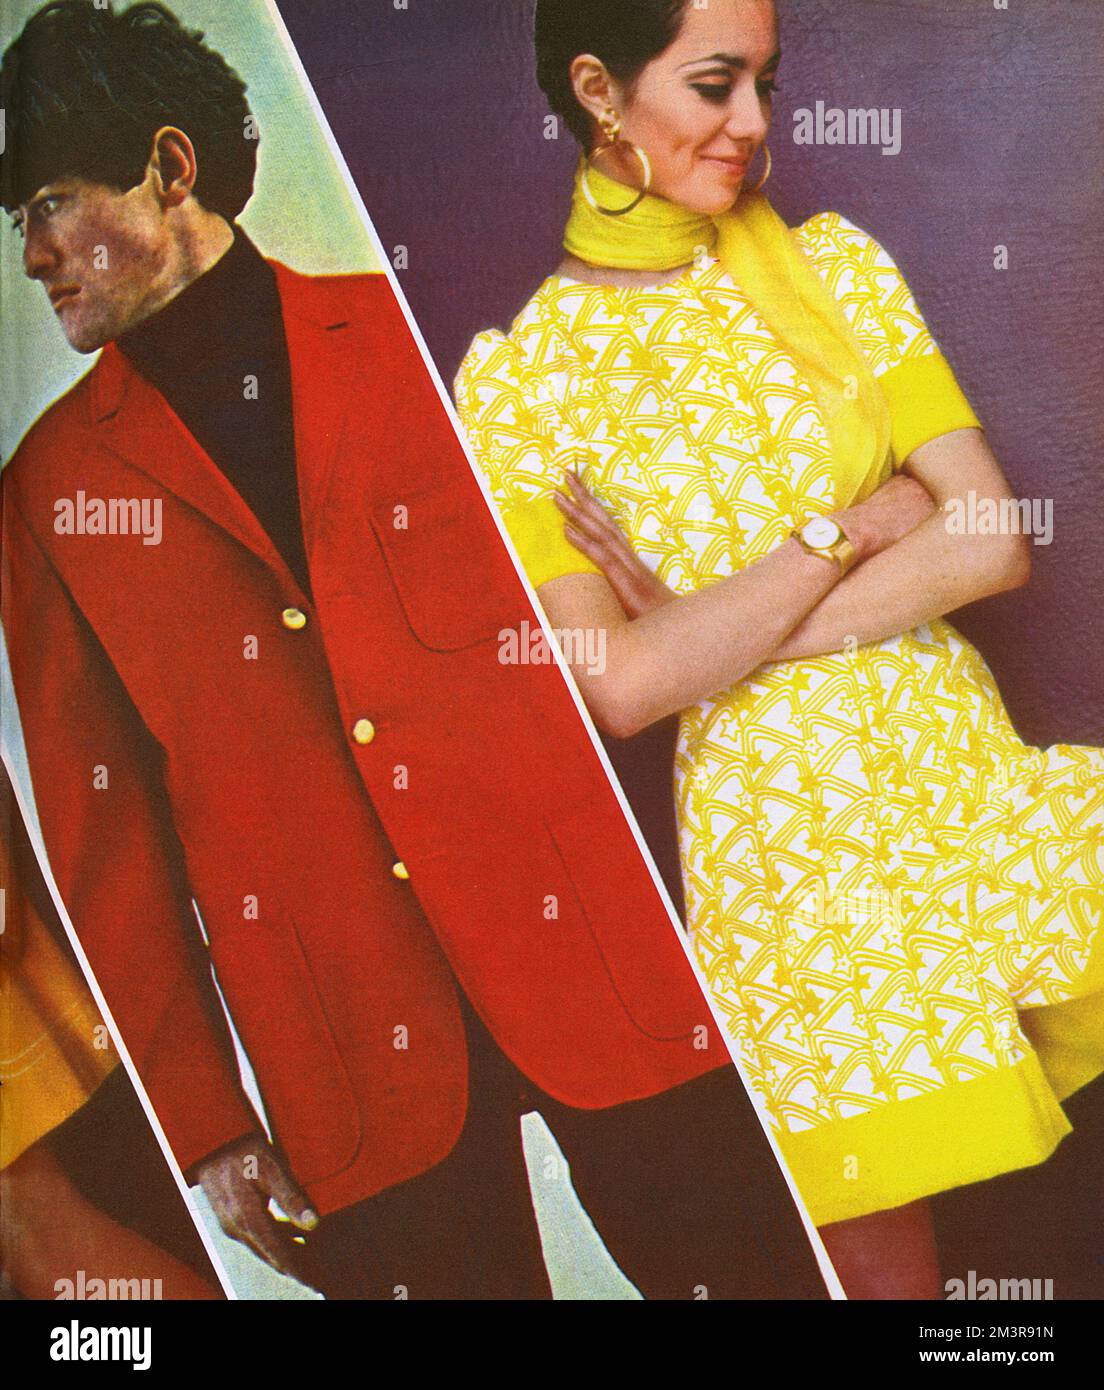 Teil einer Mode verbreitete sich 1966 im extrem groovy, aber kurzlebigen London Life Magazin. Der Mann auf der linken Seite trägt einen roten Säulenblazer von Rodex, der von der British Menswear Guild für ihre bevorstehende Ausstellung im Design Centre, exklusiv für Lillywhites, ausgewählt wurde. Das Mädchen auf der rechten Seite trägt ein kurzes, gelb-weiß bedrucktes Culotte-Kleid, 9 Guineas im Quorum, getragen mit großen goldenen Ohrringen und Chiffonschal, beide von Harrods. 1966 Stockfoto